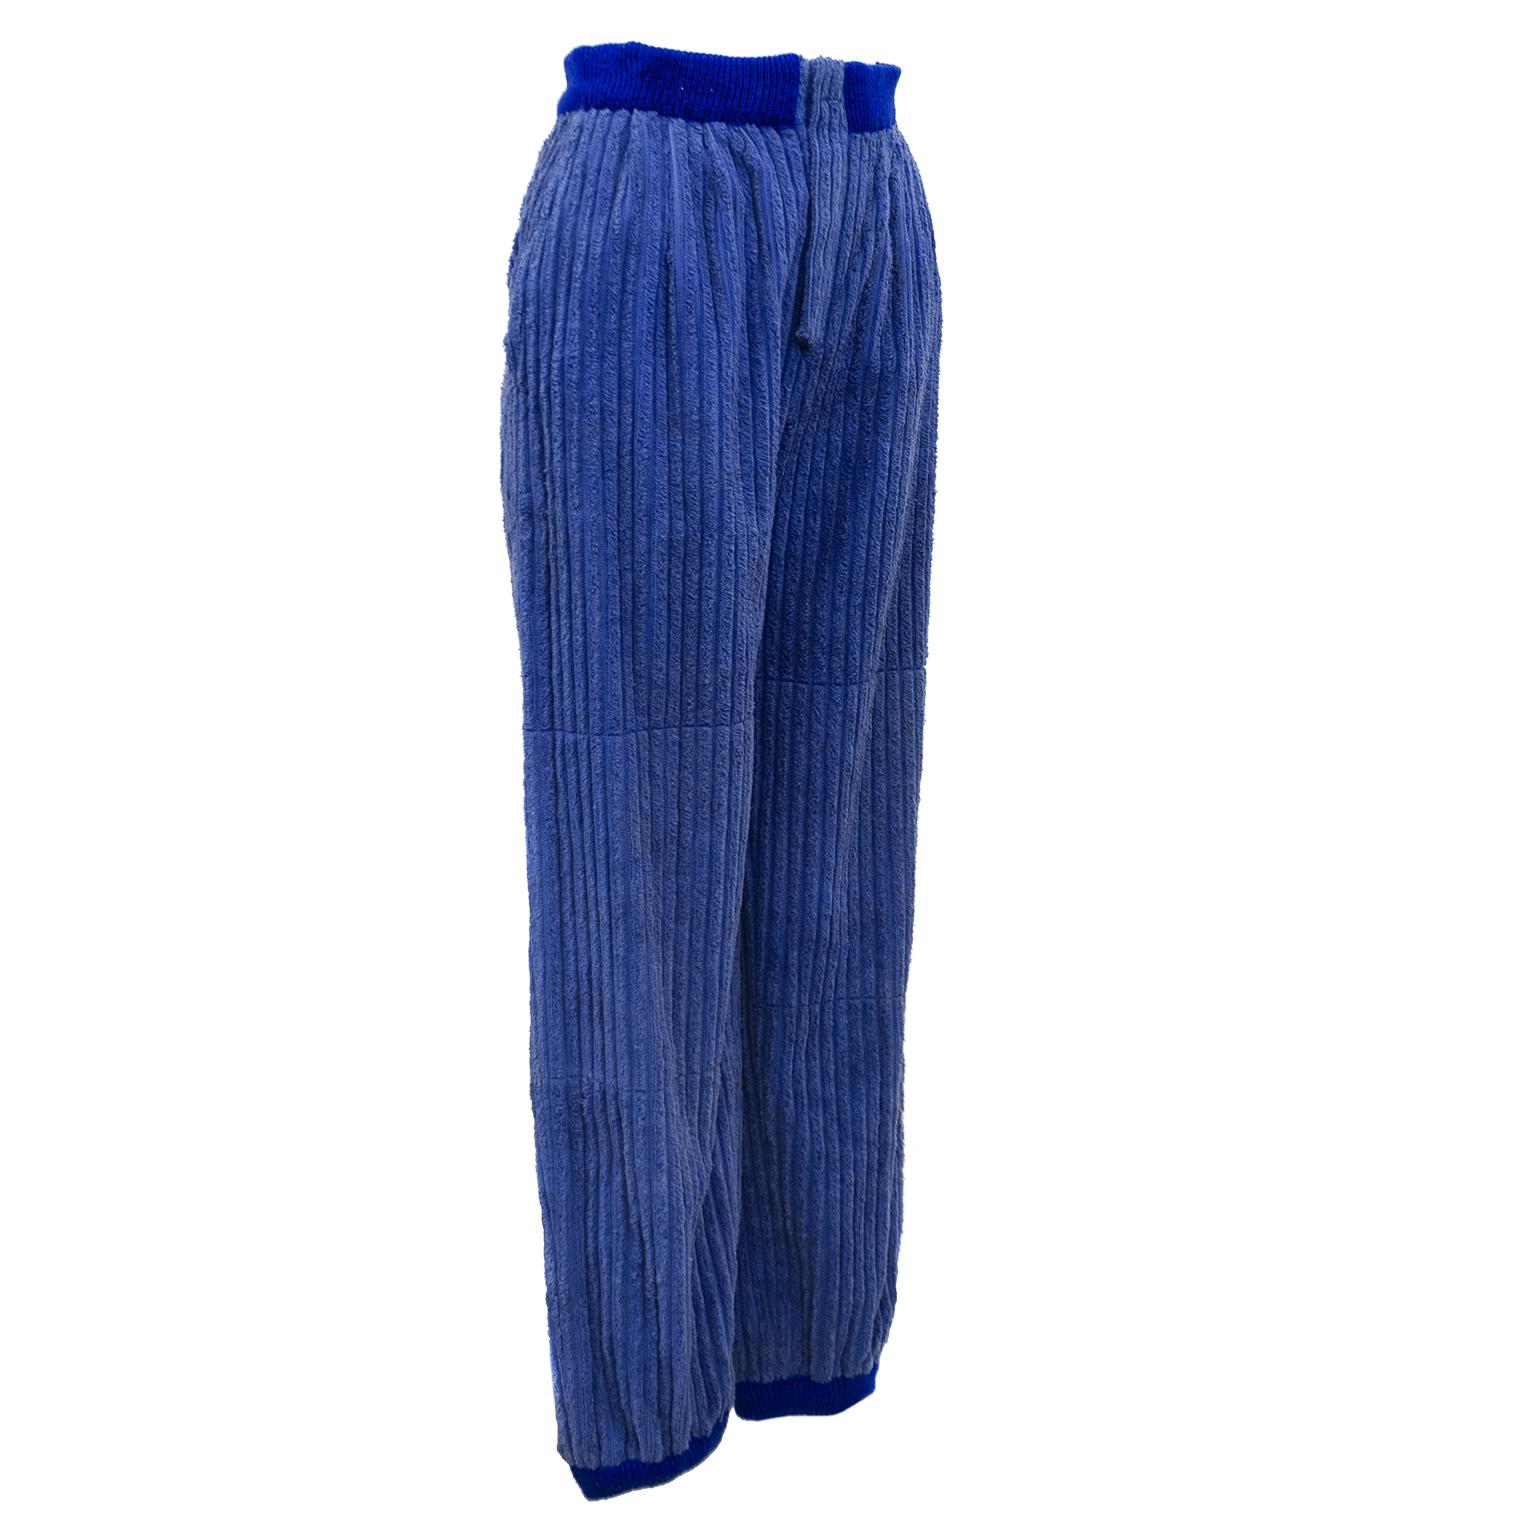 Pantalon de jogging Dorothée Bis des années 1970 en velours côtelé bleu roi avec bandes en tricot côtelé aux chevilles et à la taille. La braguette avant et les poches latérales en biais complètent l'allure générale décontractée de ce pantalon.